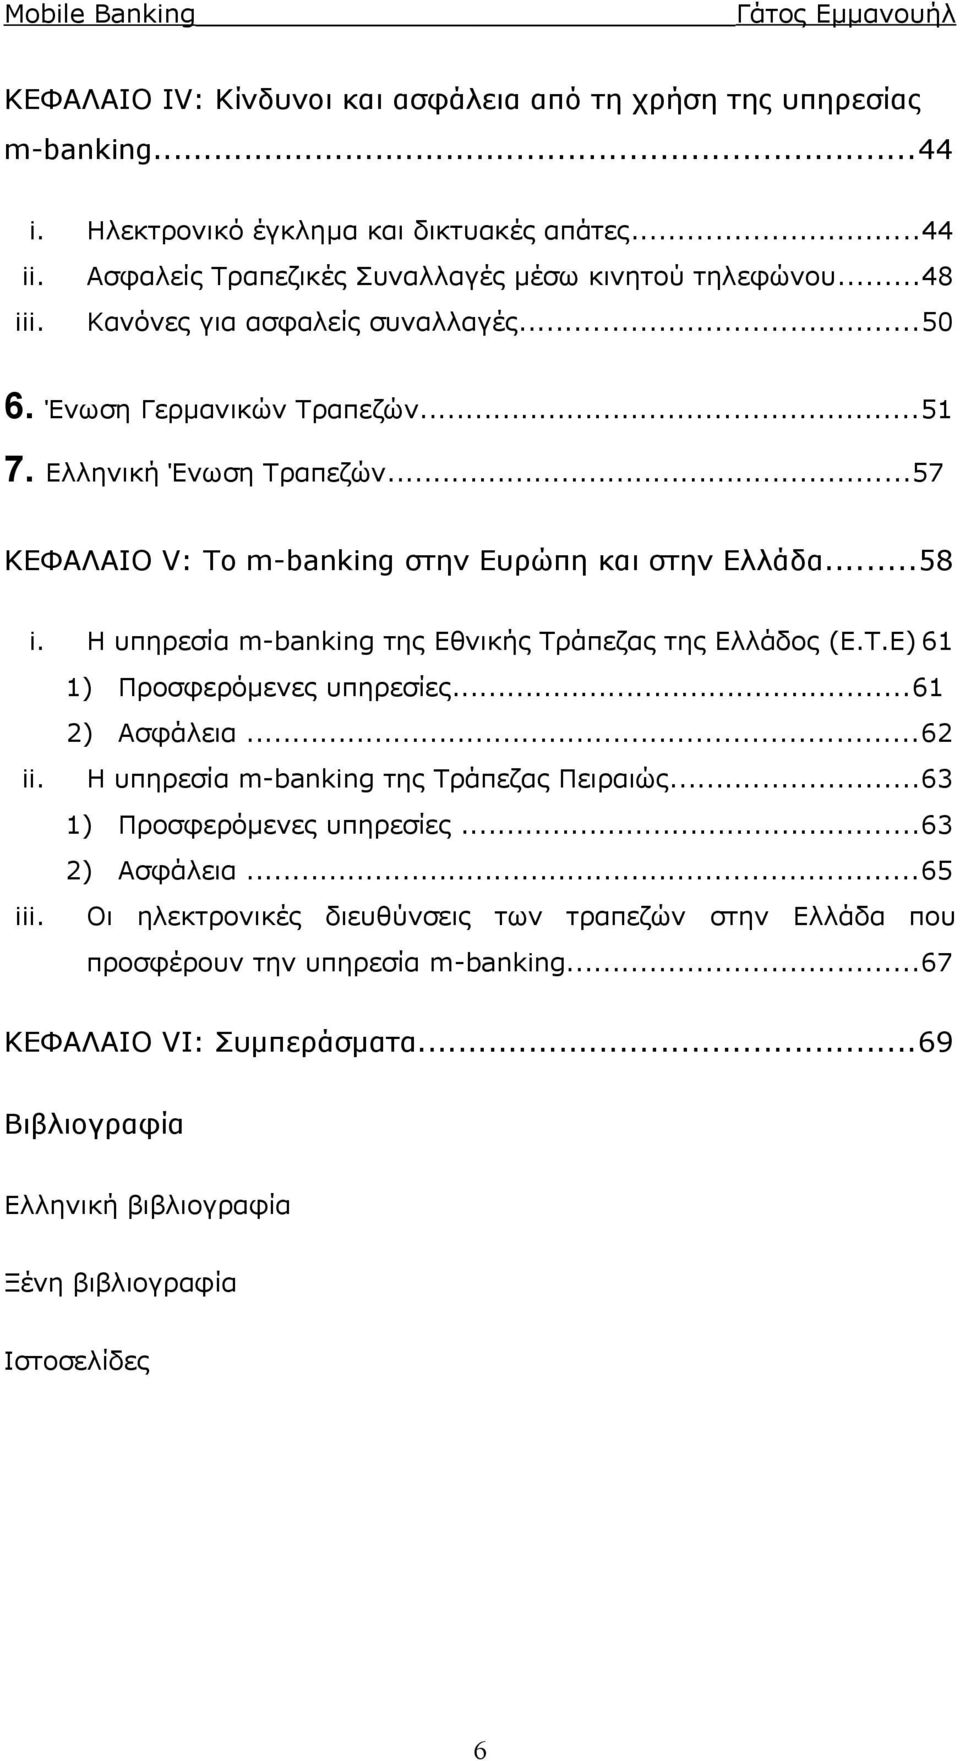 Η υπηρεσία m-banking της Εθνικής Τράπεζας της Ελλάδος (Ε.Τ.Ε) 61 1) Προσφερόμενες υπηρεσίες...61 2) Ασφάλεια...62 ii. Η υπηρεσία m-banking της Τράπεζας Πειραιώς...63 1) Προσφερόμενες υπηρεσίες.